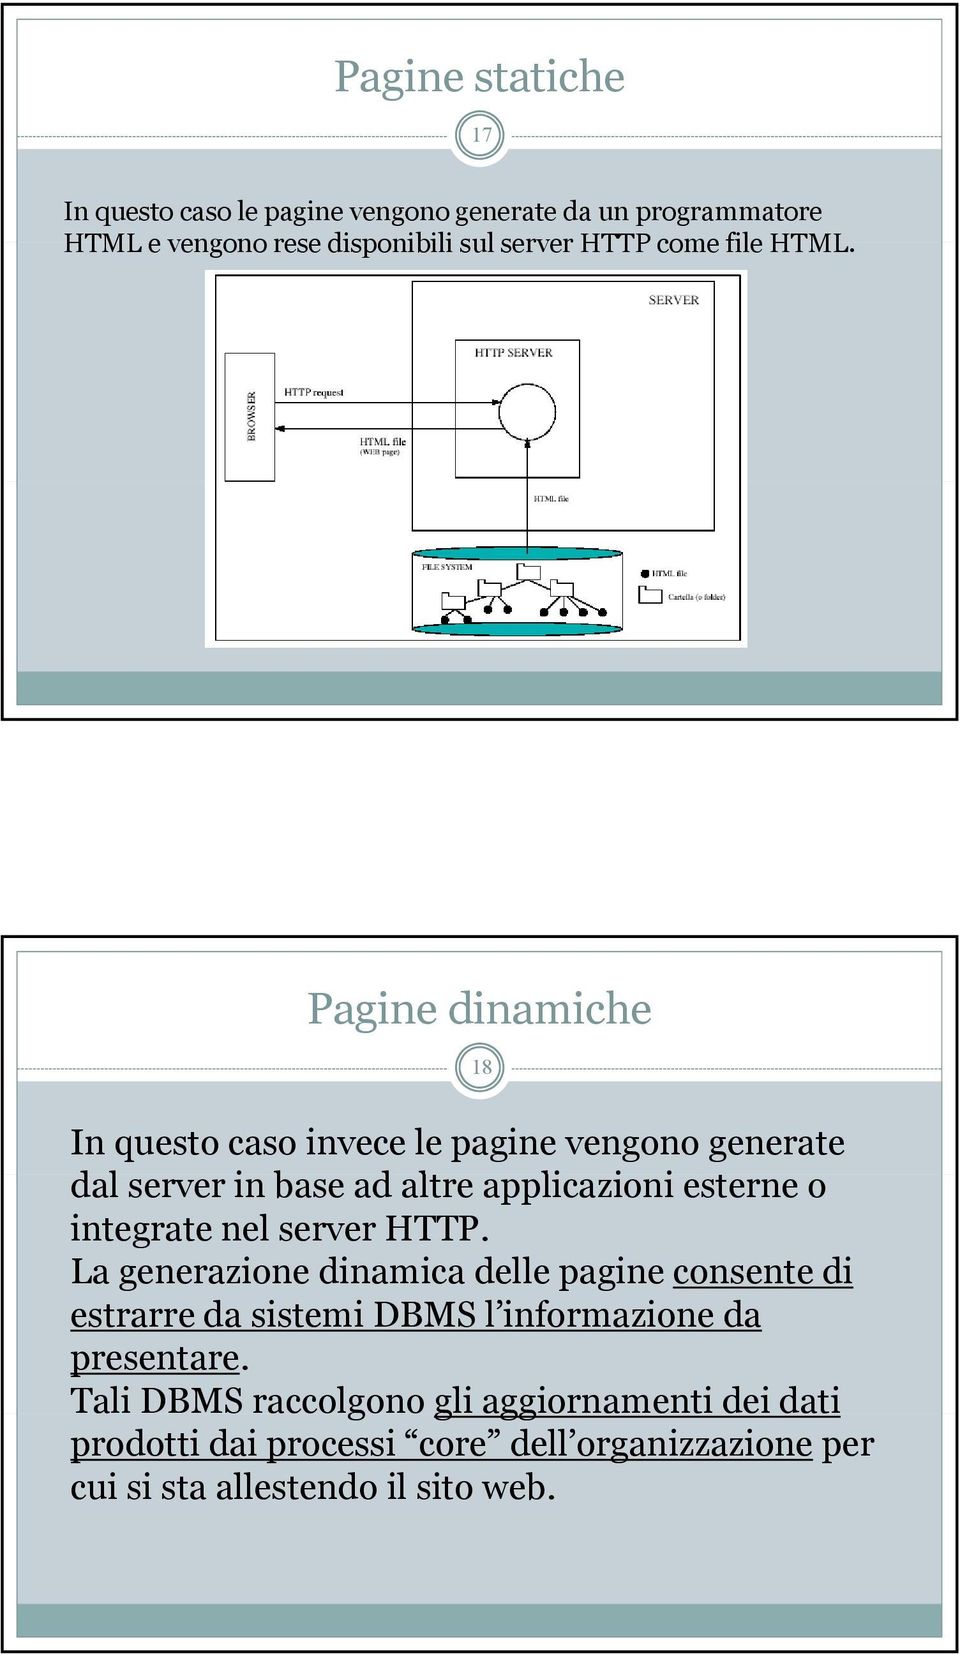 Pagine dinamiche 18 In questo caso invece le pagine vengono generate dal server in base ad altre applicazioni i i esterne o integrate